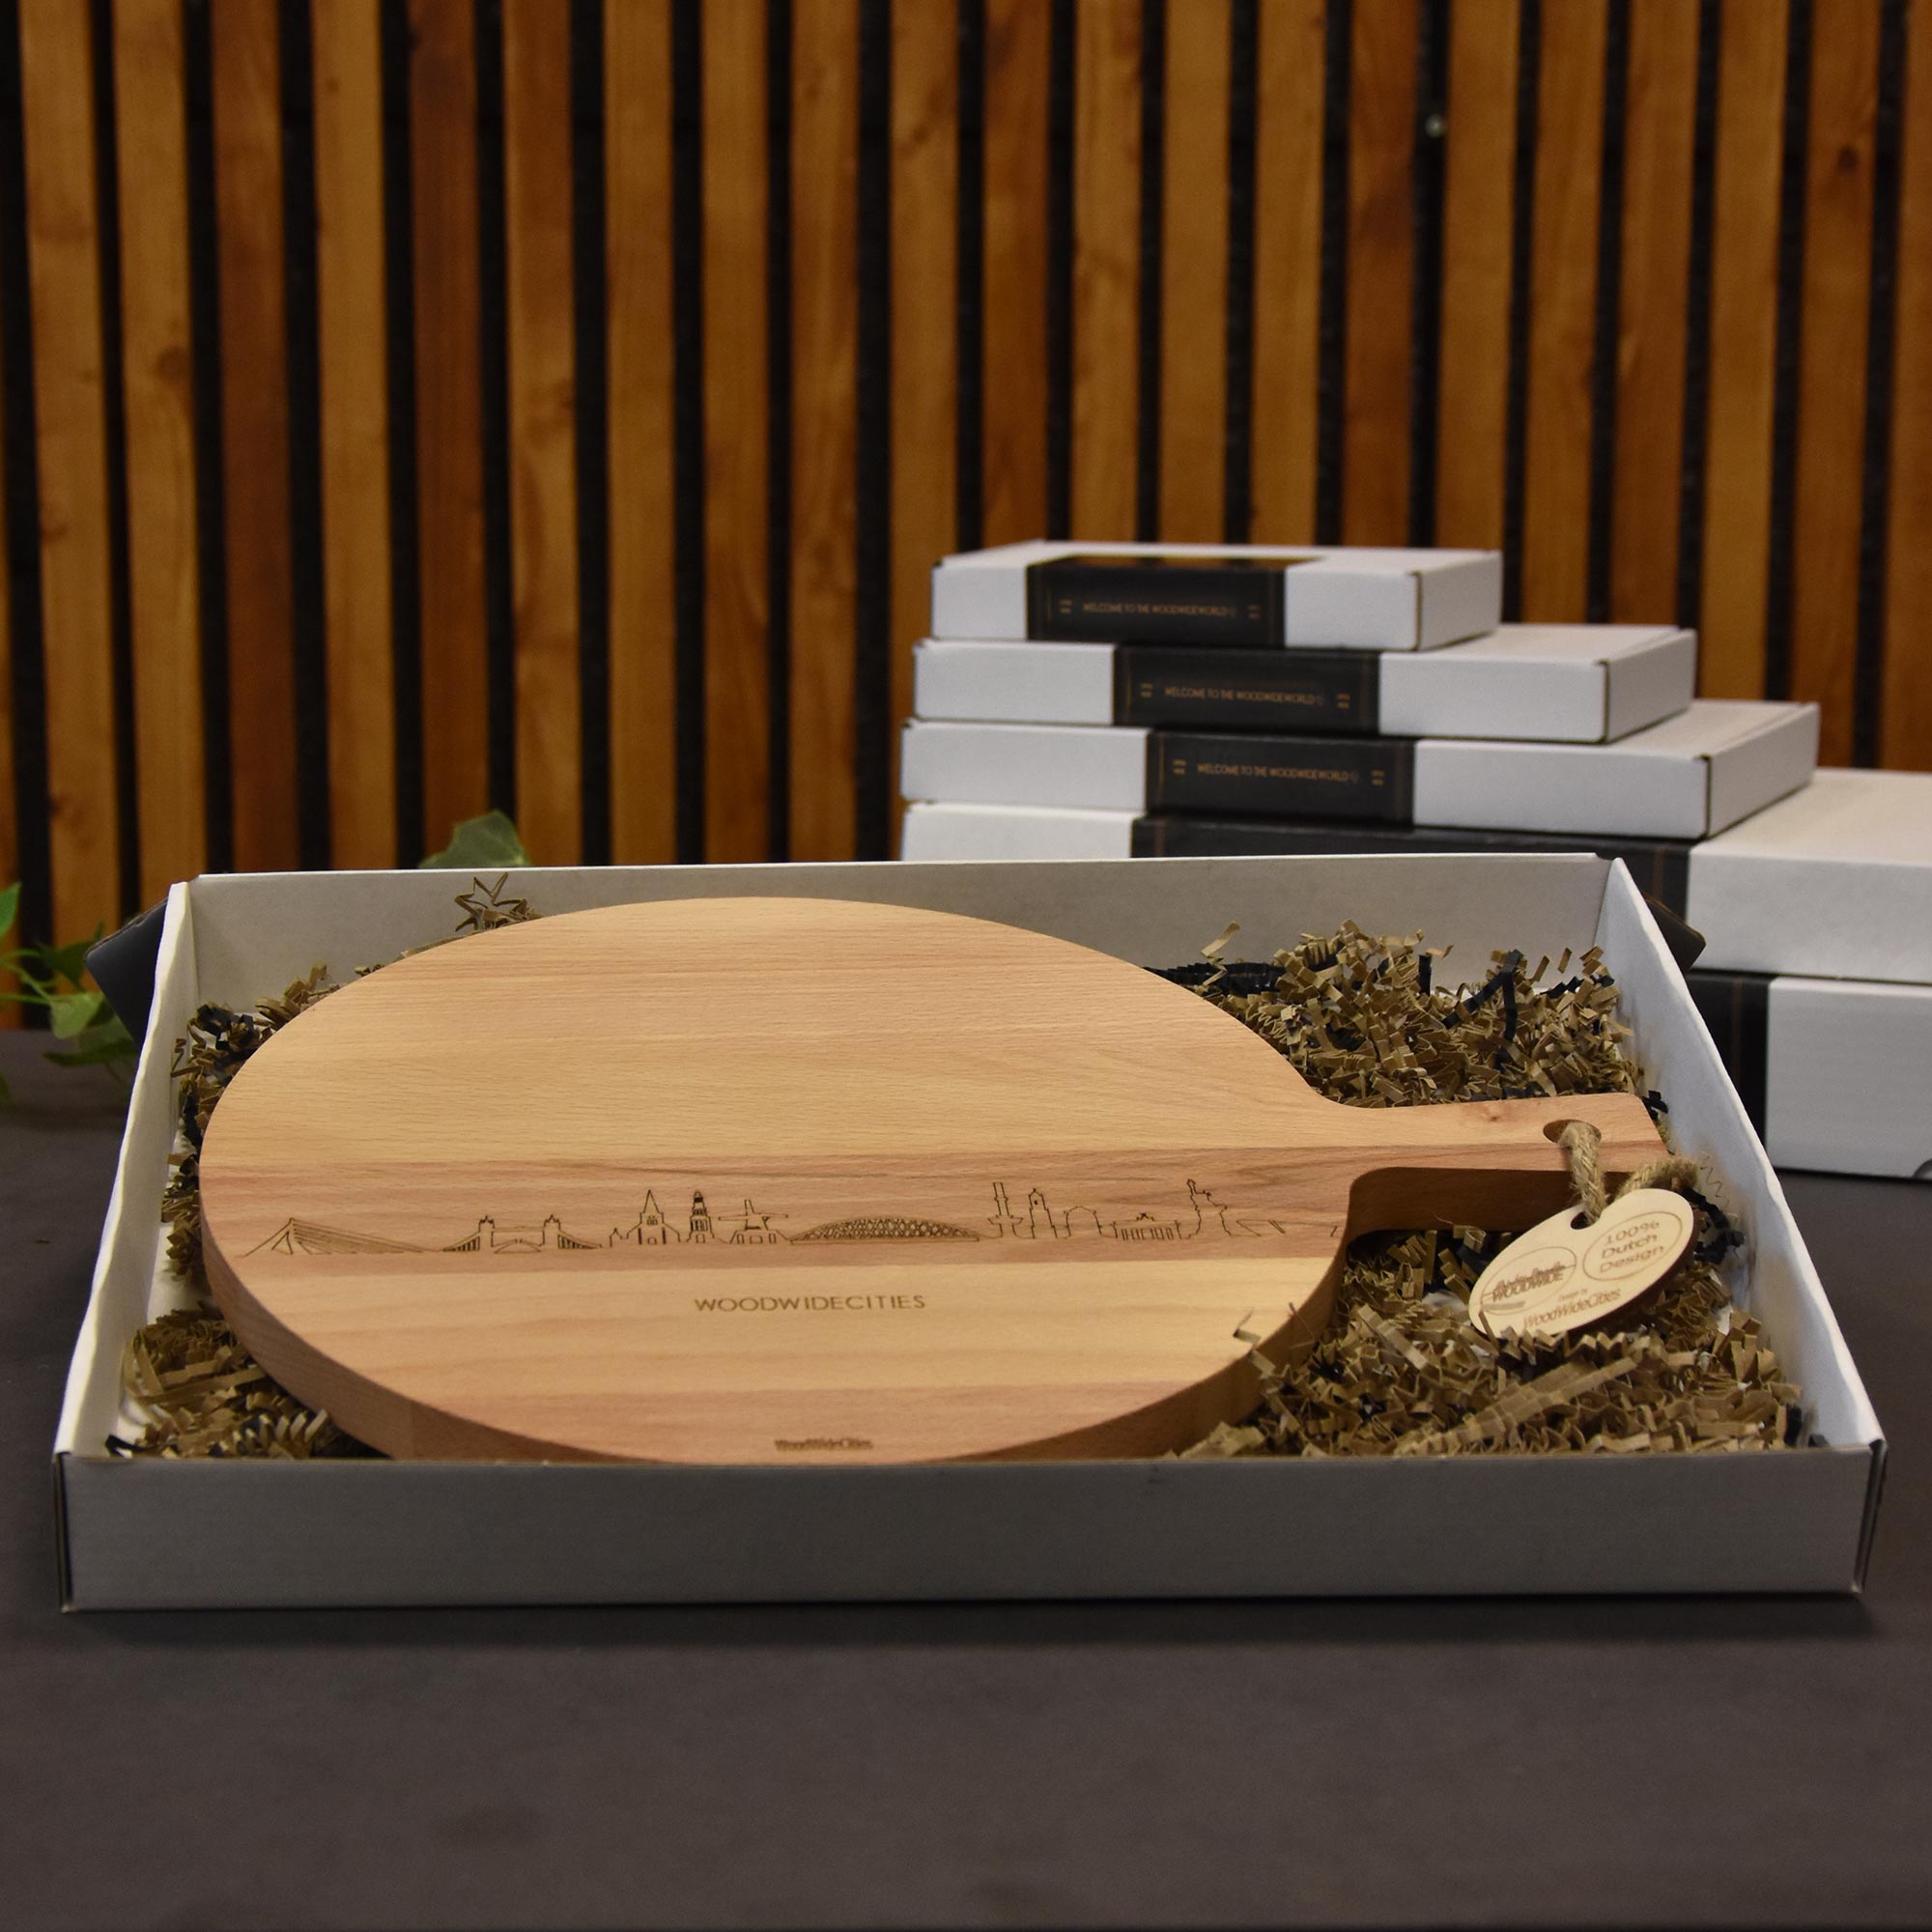 Skyline Serveerplank Rond Uden houten cadeau decoratie relatiegeschenk van WoodWideCities